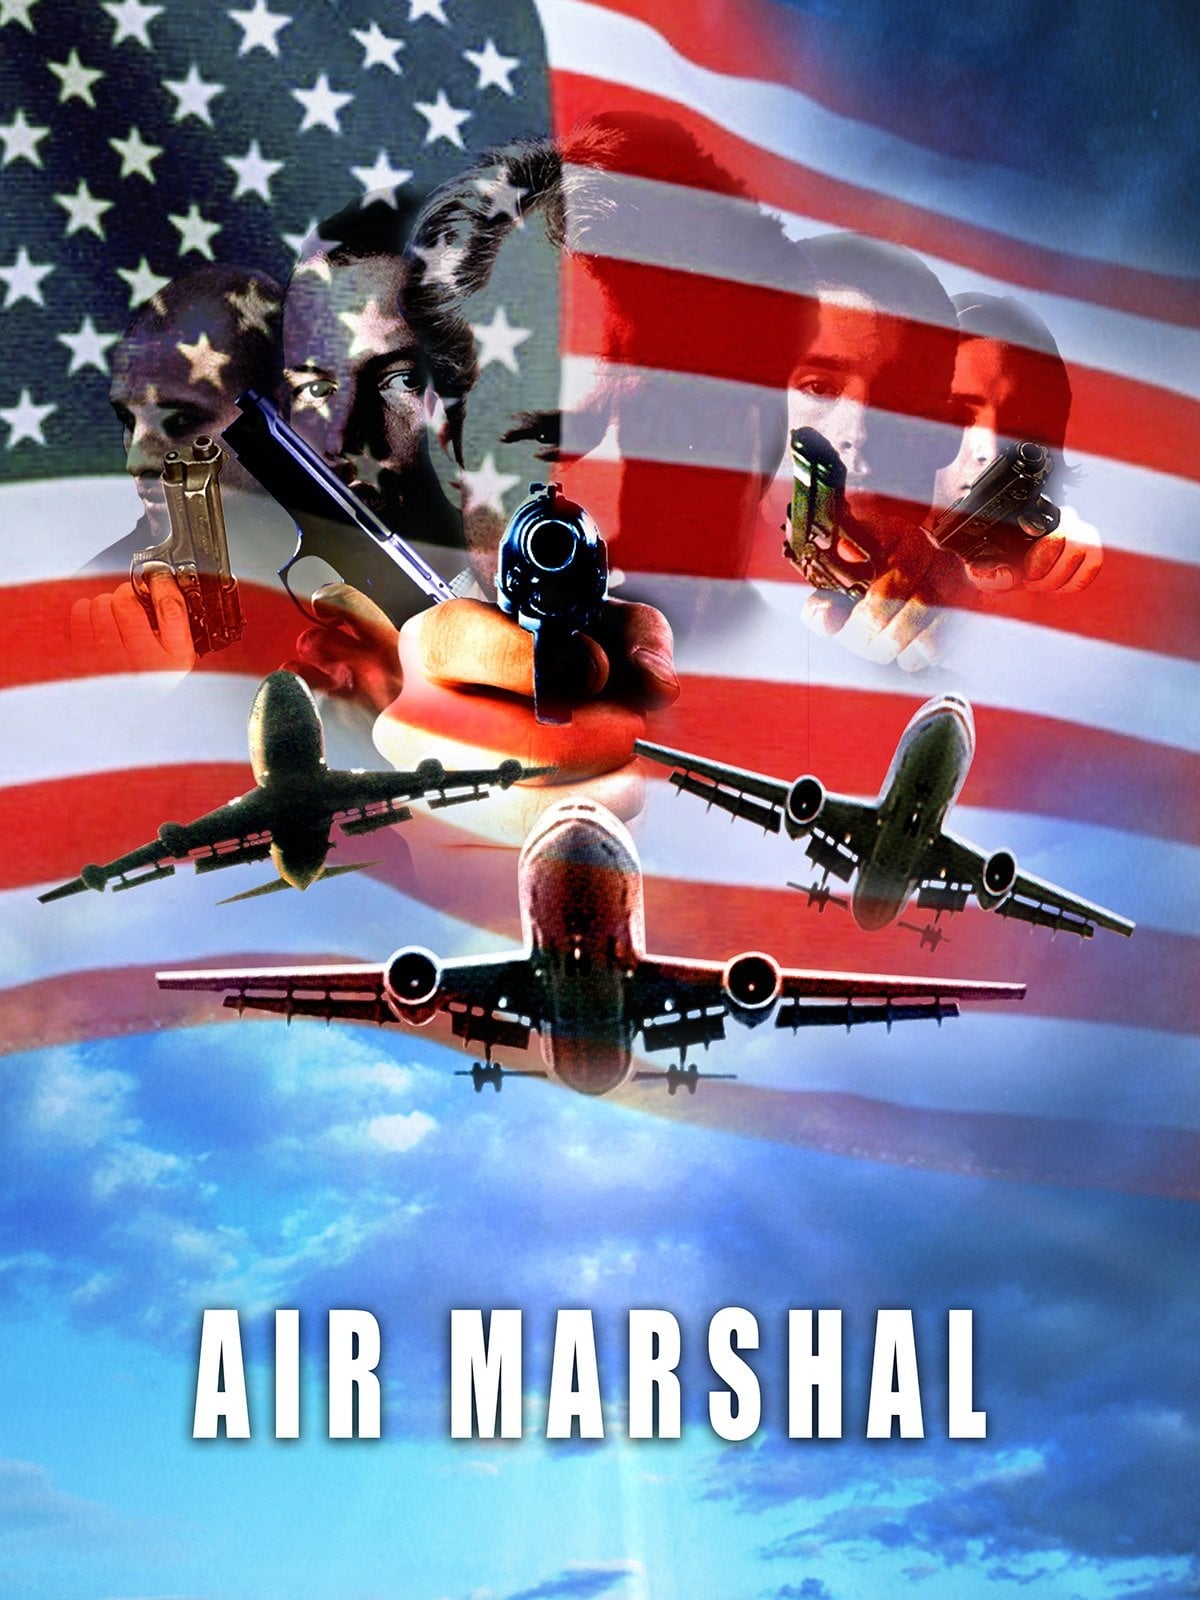 Air Marshall (2003)